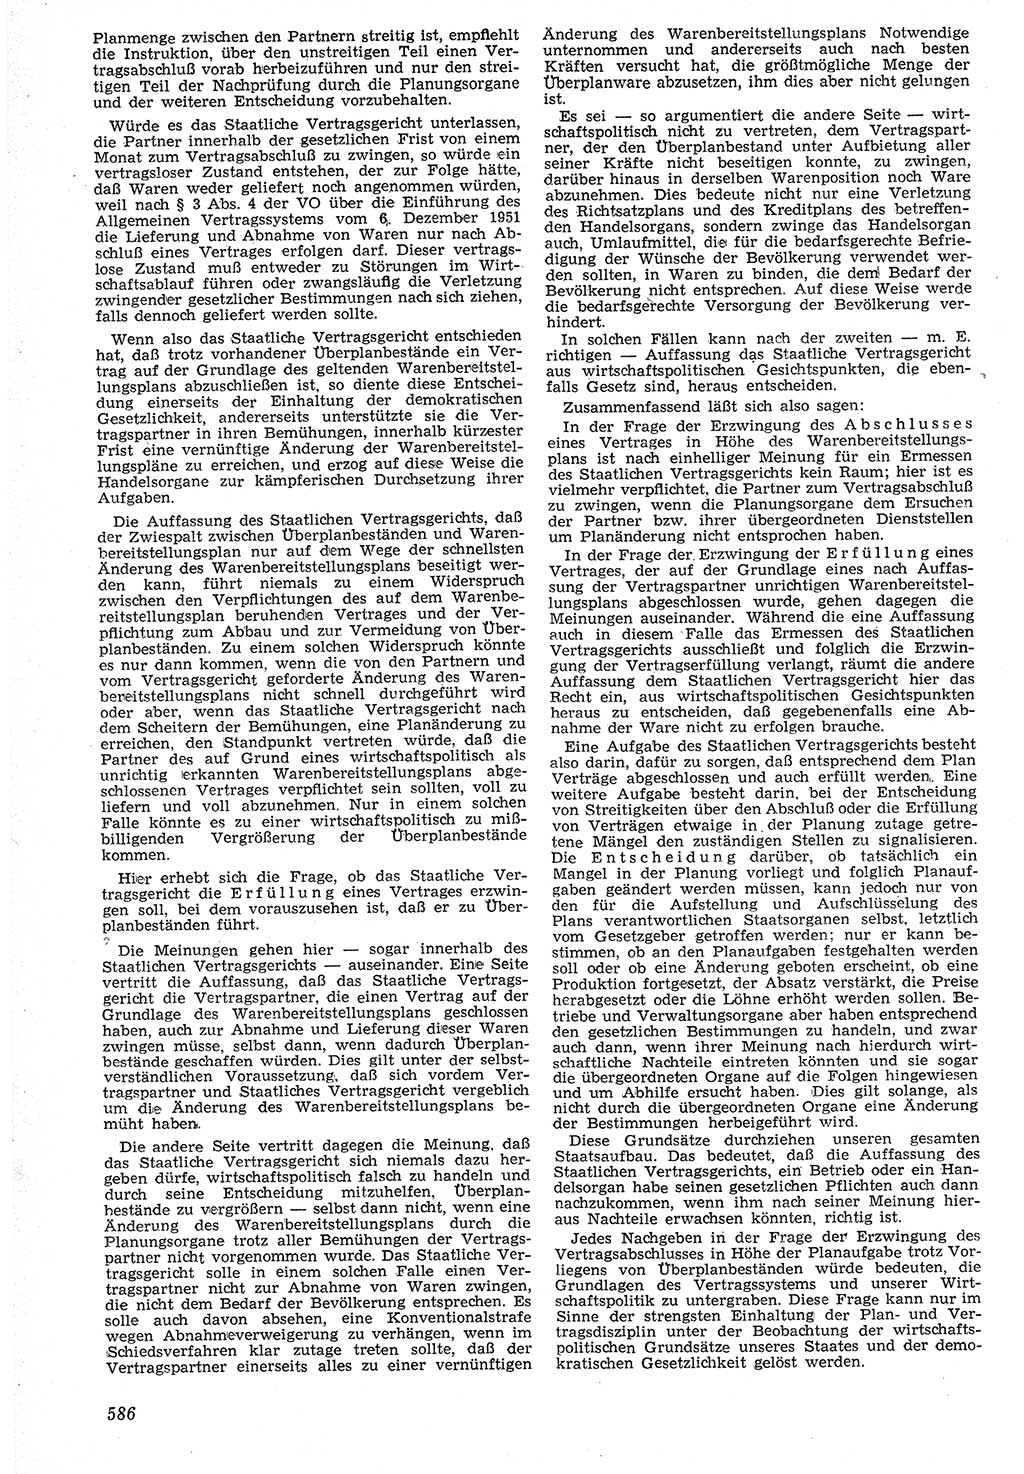 Neue Justiz (NJ), Zeitschrift für Recht und Rechtswissenschaft [Deutsche Demokratische Republik (DDR)], 7. Jahrgang 1953, Seite 586 (NJ DDR 1953, S. 586)